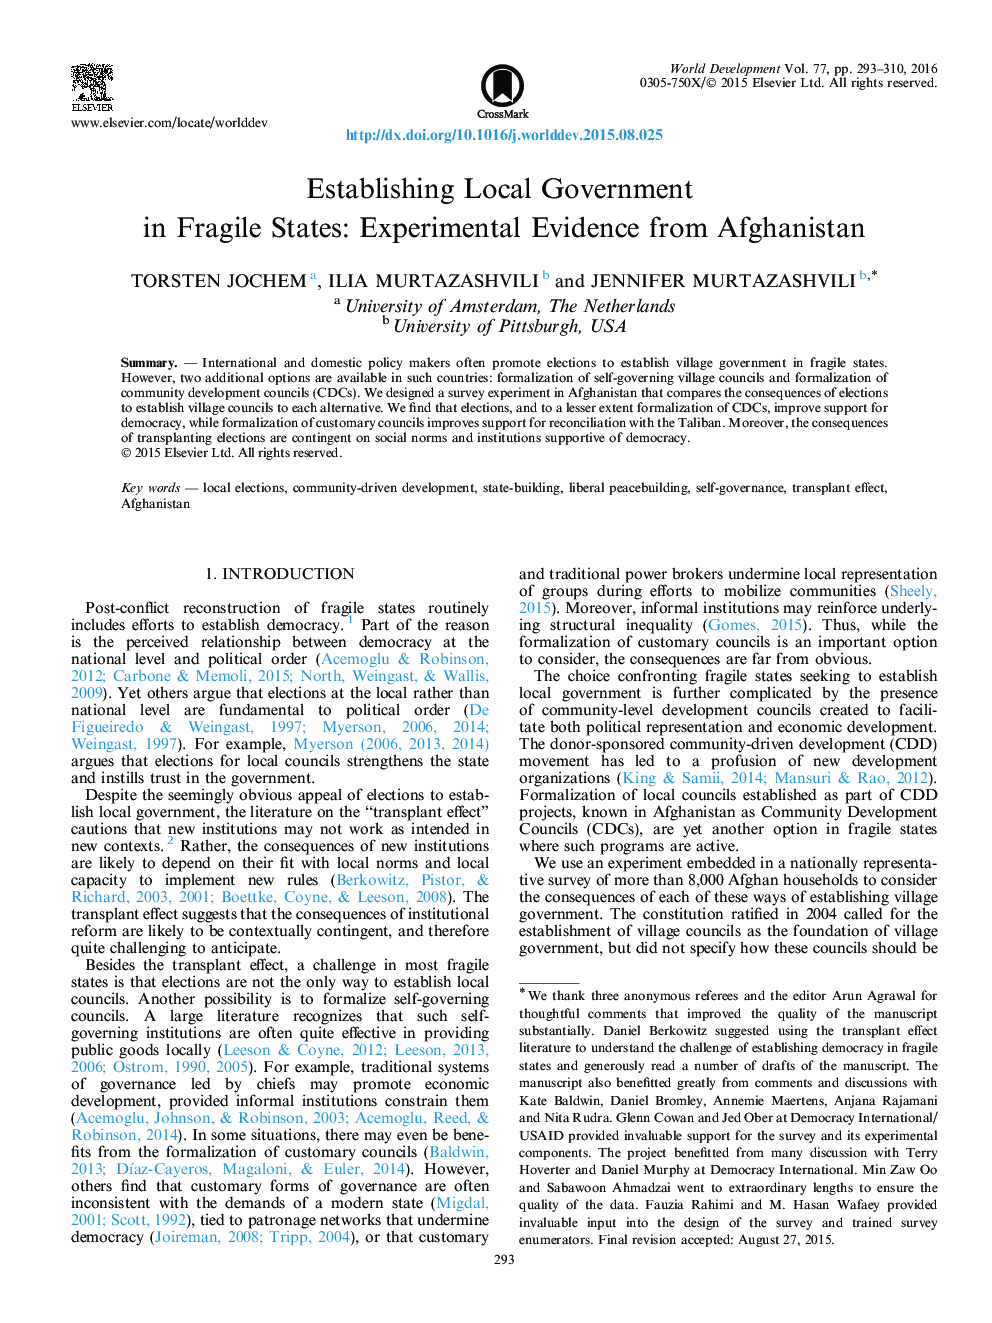 ایجاد دولت محلی در کشورهای ضعیف: شواهد تجربی از افغانستان 